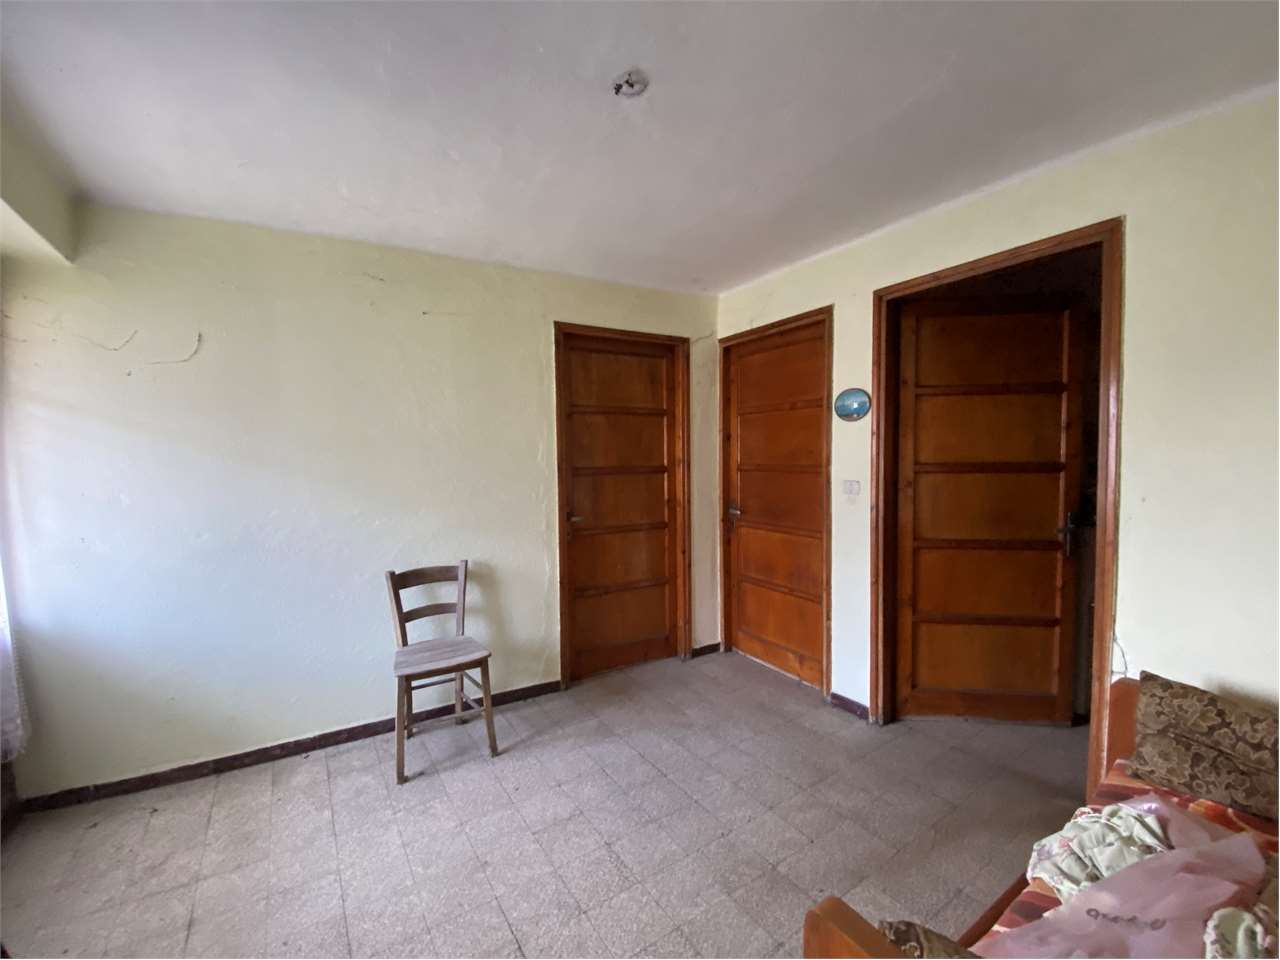 Appartamento in vendita a Piedimulera, 9 locali, prezzo € 115.000 | PortaleAgenzieImmobiliari.it